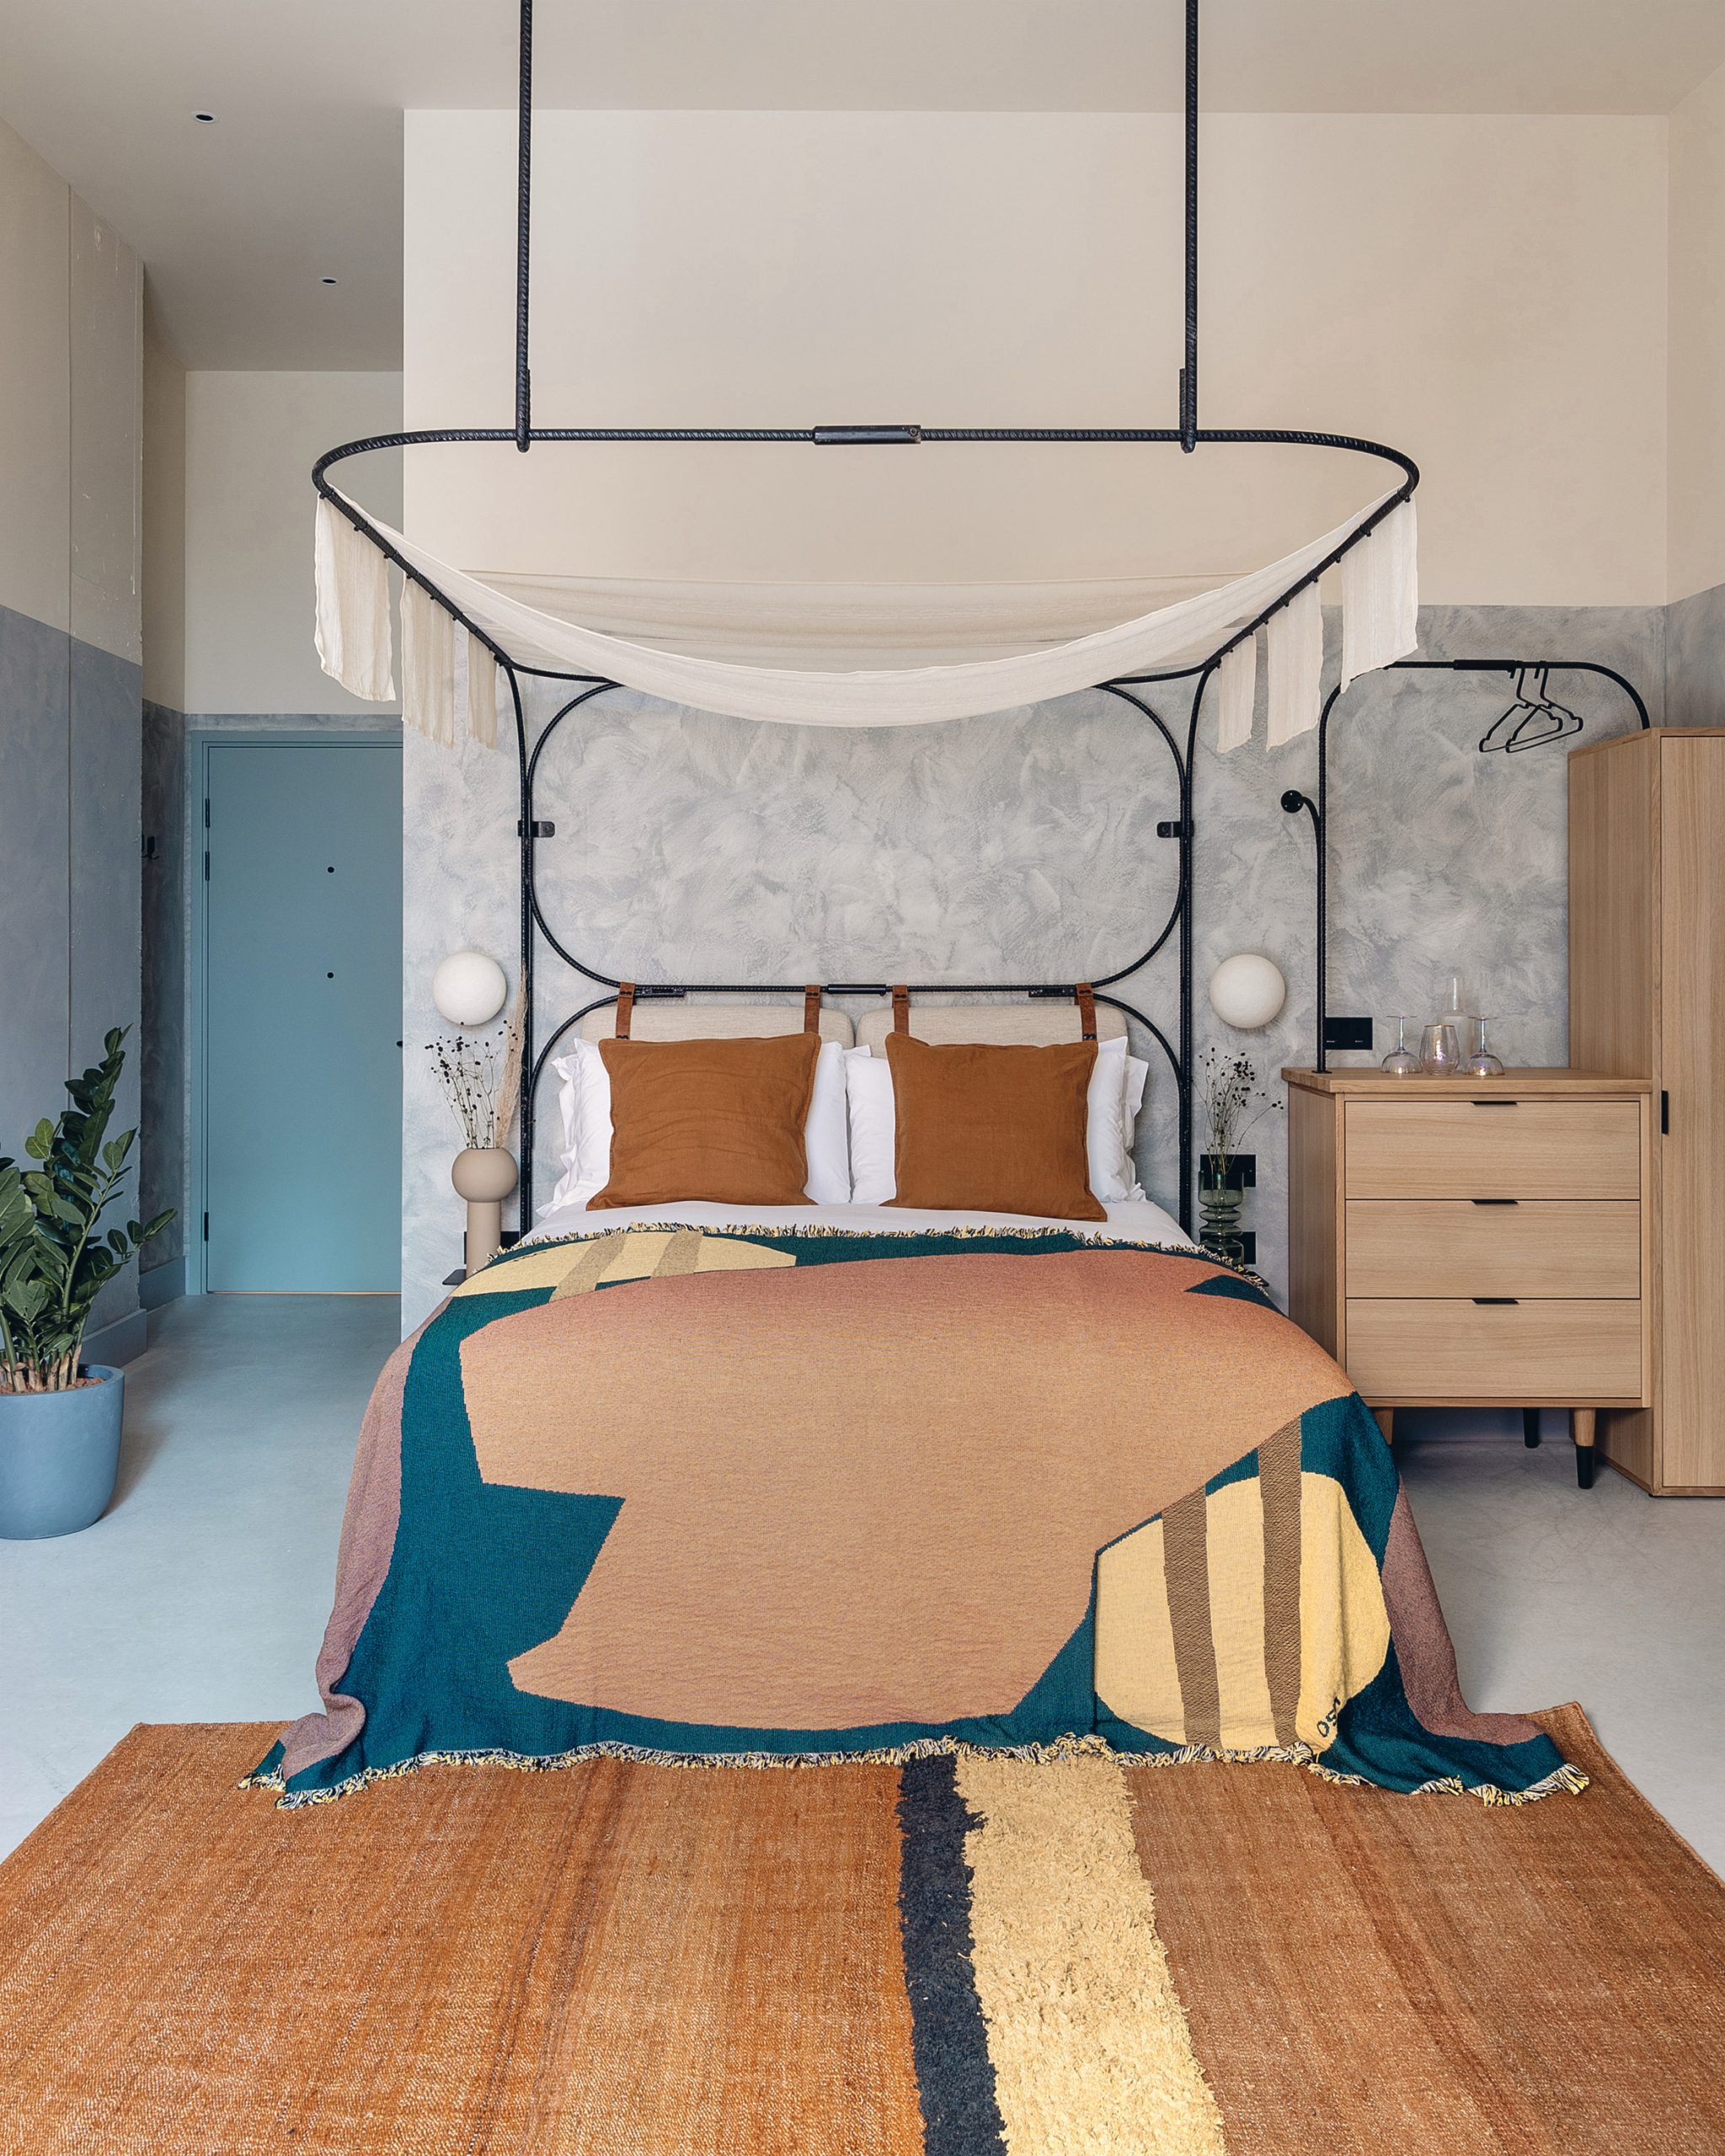 Guest bedrooms of London's Bermonds Locke hotel designed by Holloway Li